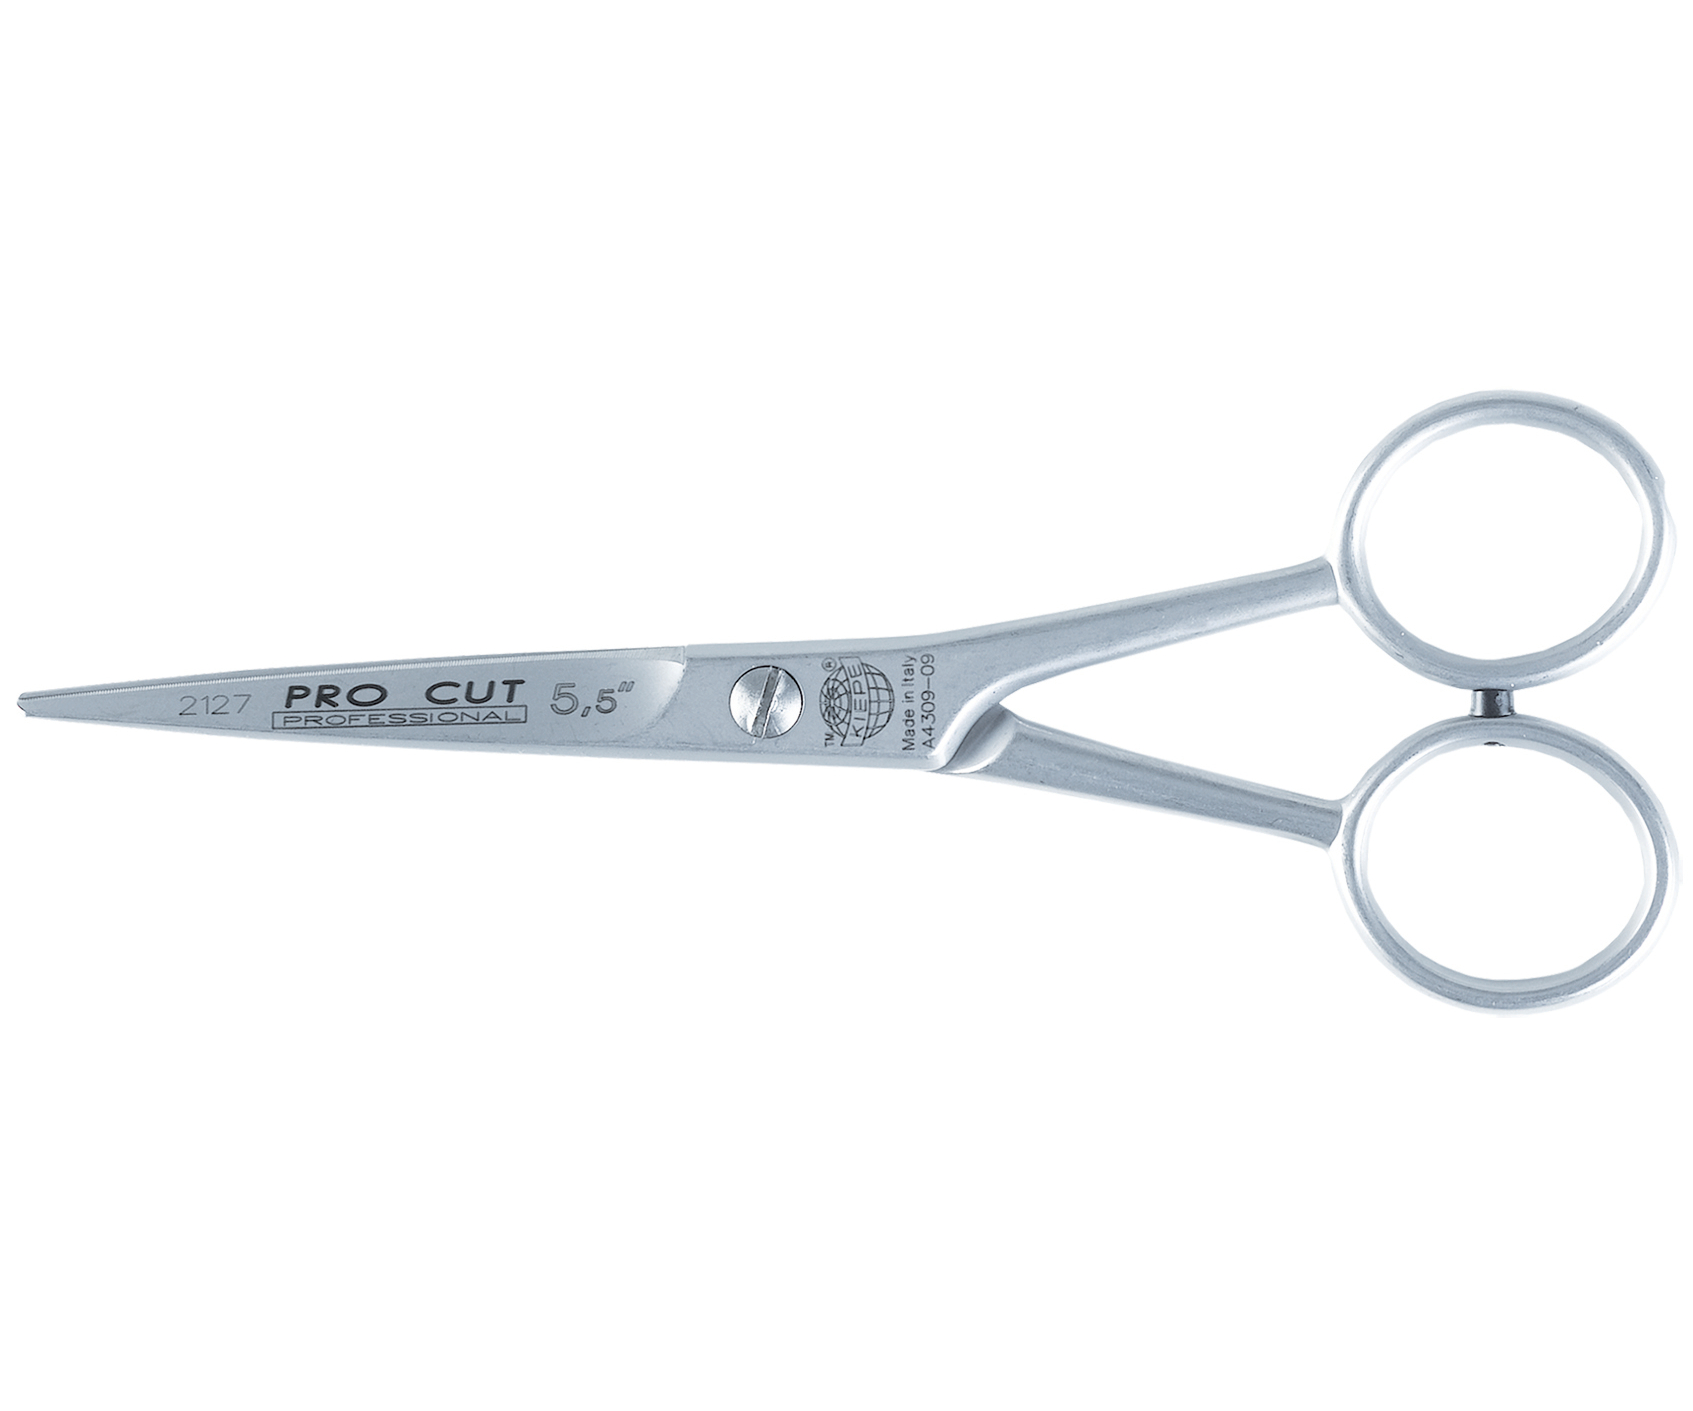 Kadeřnické nůžky s mikroozubením Kiepe Standard Hair Scissors Pro Cut 2127 - 5,5" stříbrné (2127/5.5) + DÁREK ZDARMA